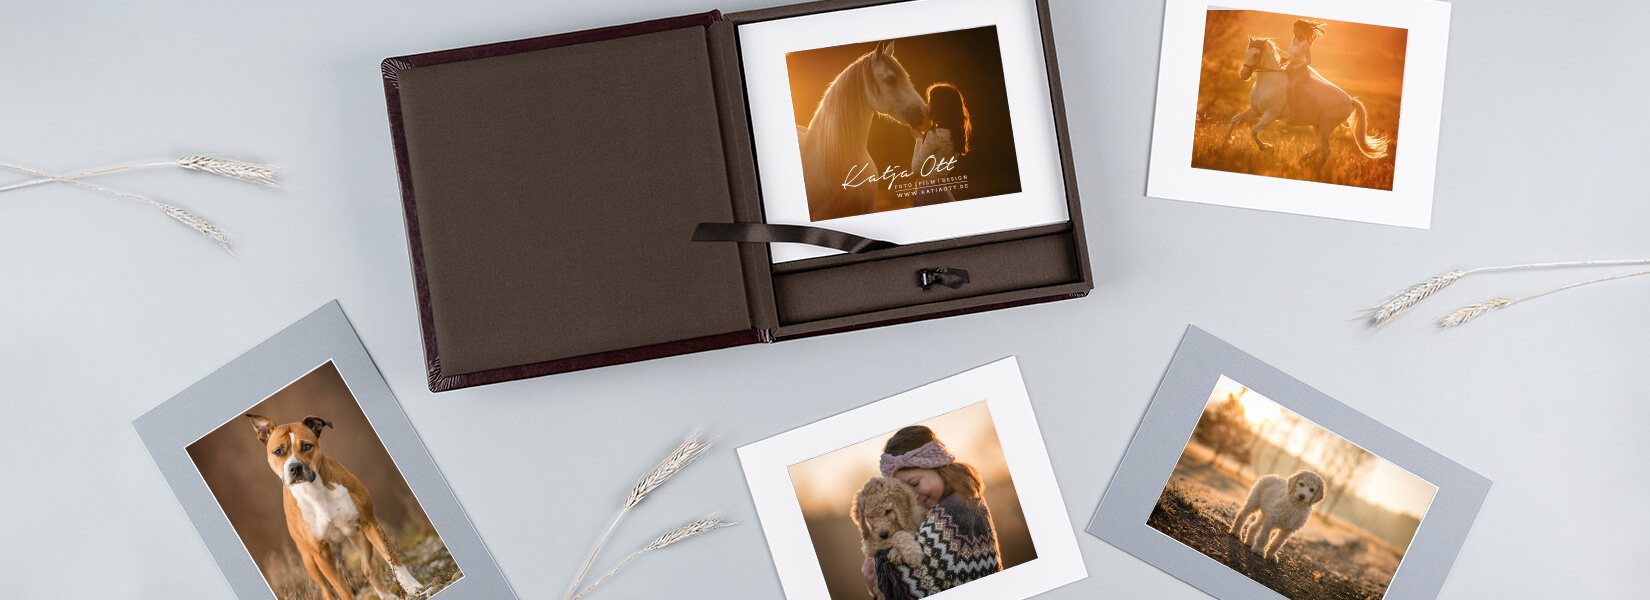 Foliobox presentatie box compleet voor de professionele fotograaf nphoto 3